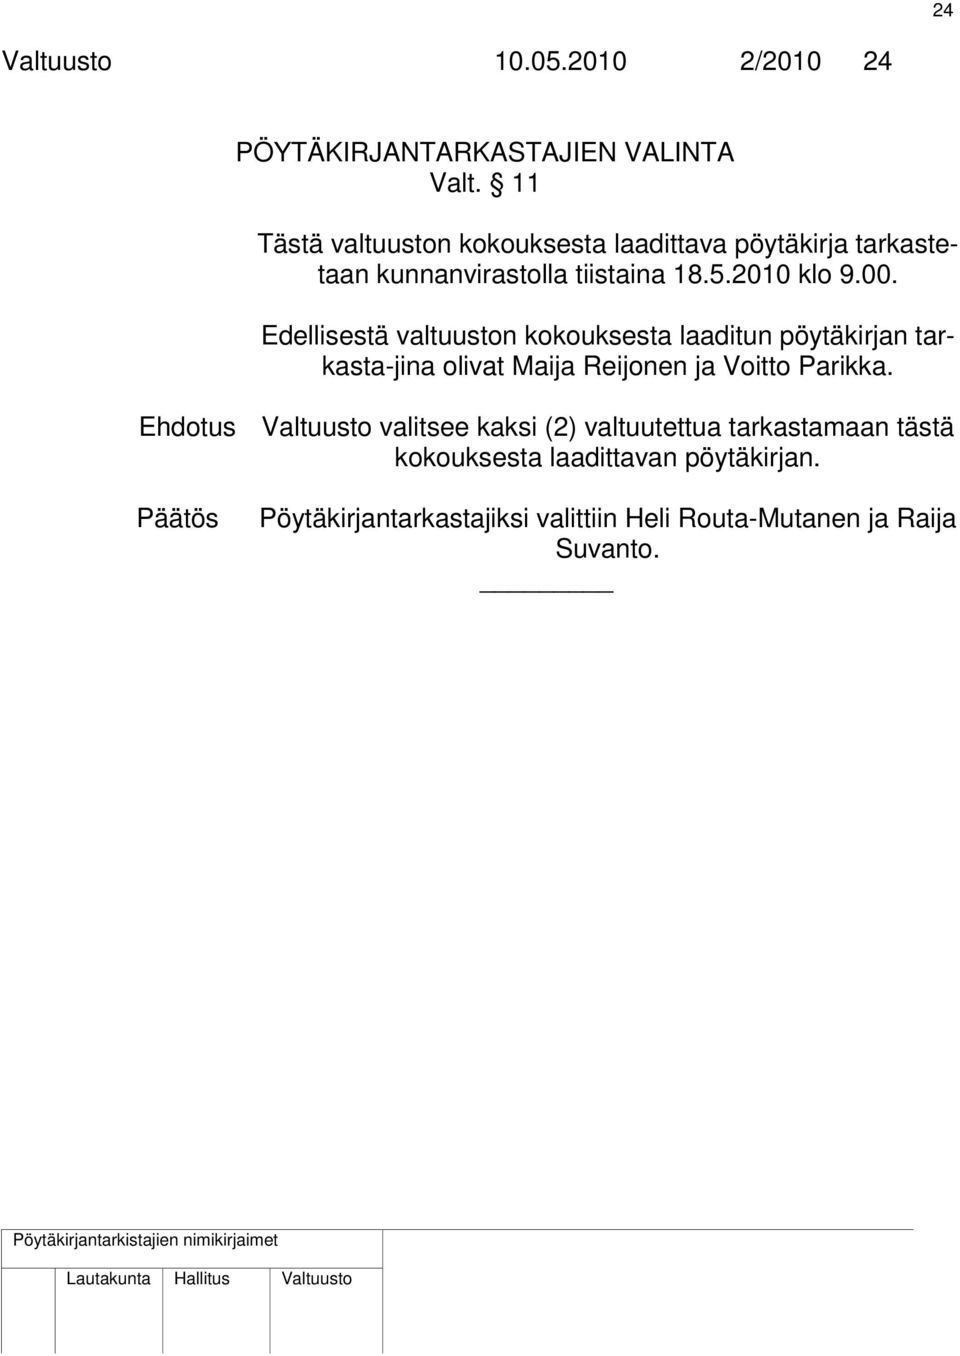 Edellisestä valtuuston kokouksesta laaditun pöytäkirjan tarkasta-jina olivat Maija Reijonen ja Voitto Parikka.